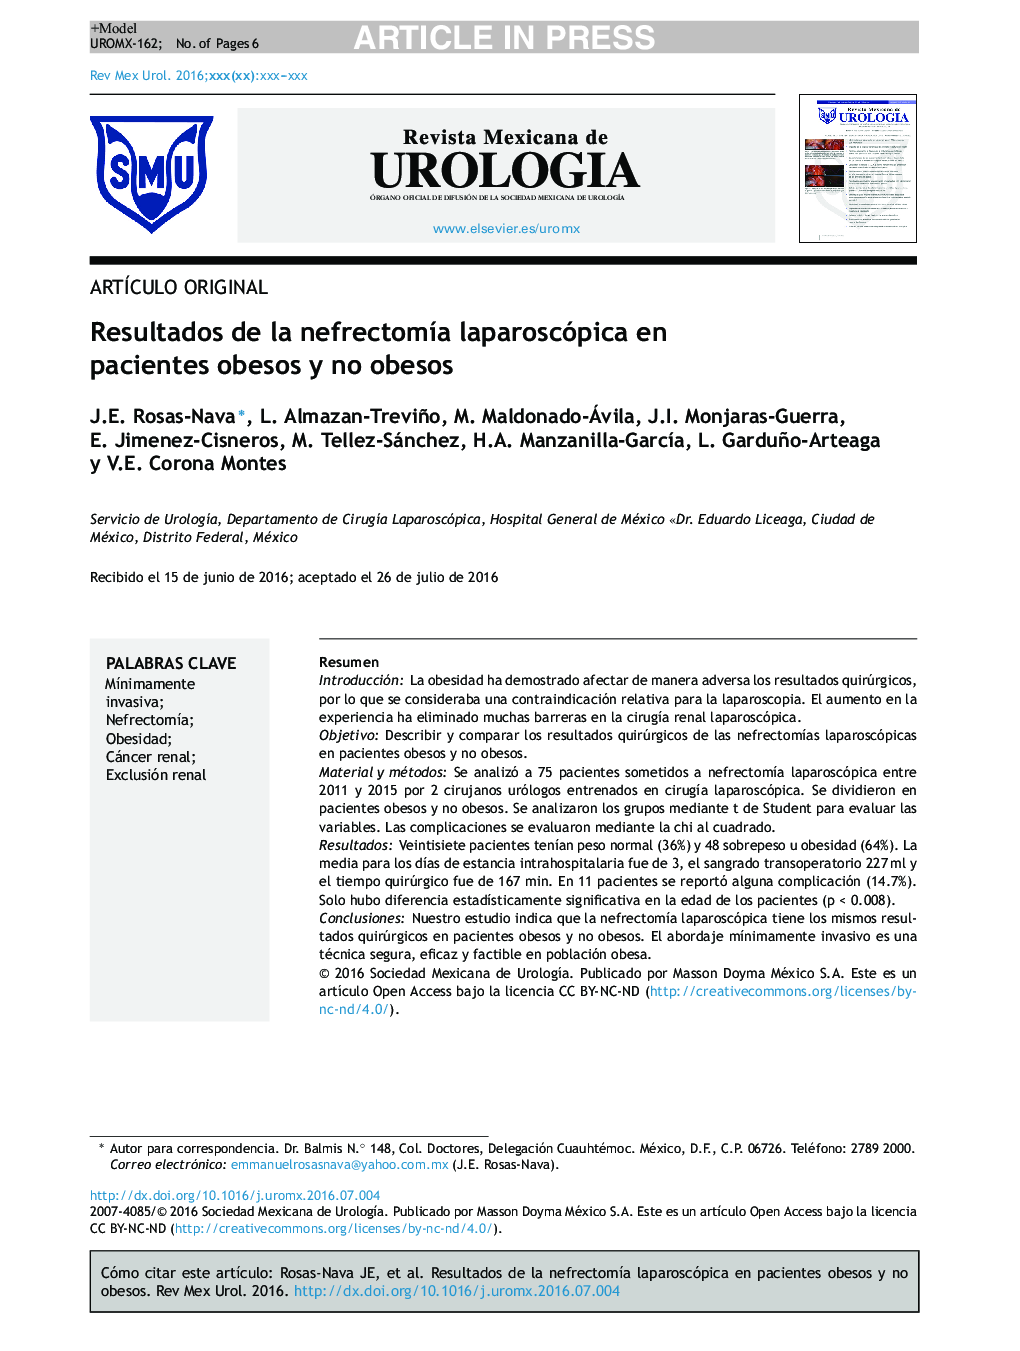 نتایج لاپاروسکوپی و نفروکمومی در بیماران چاق و غیر چاق 